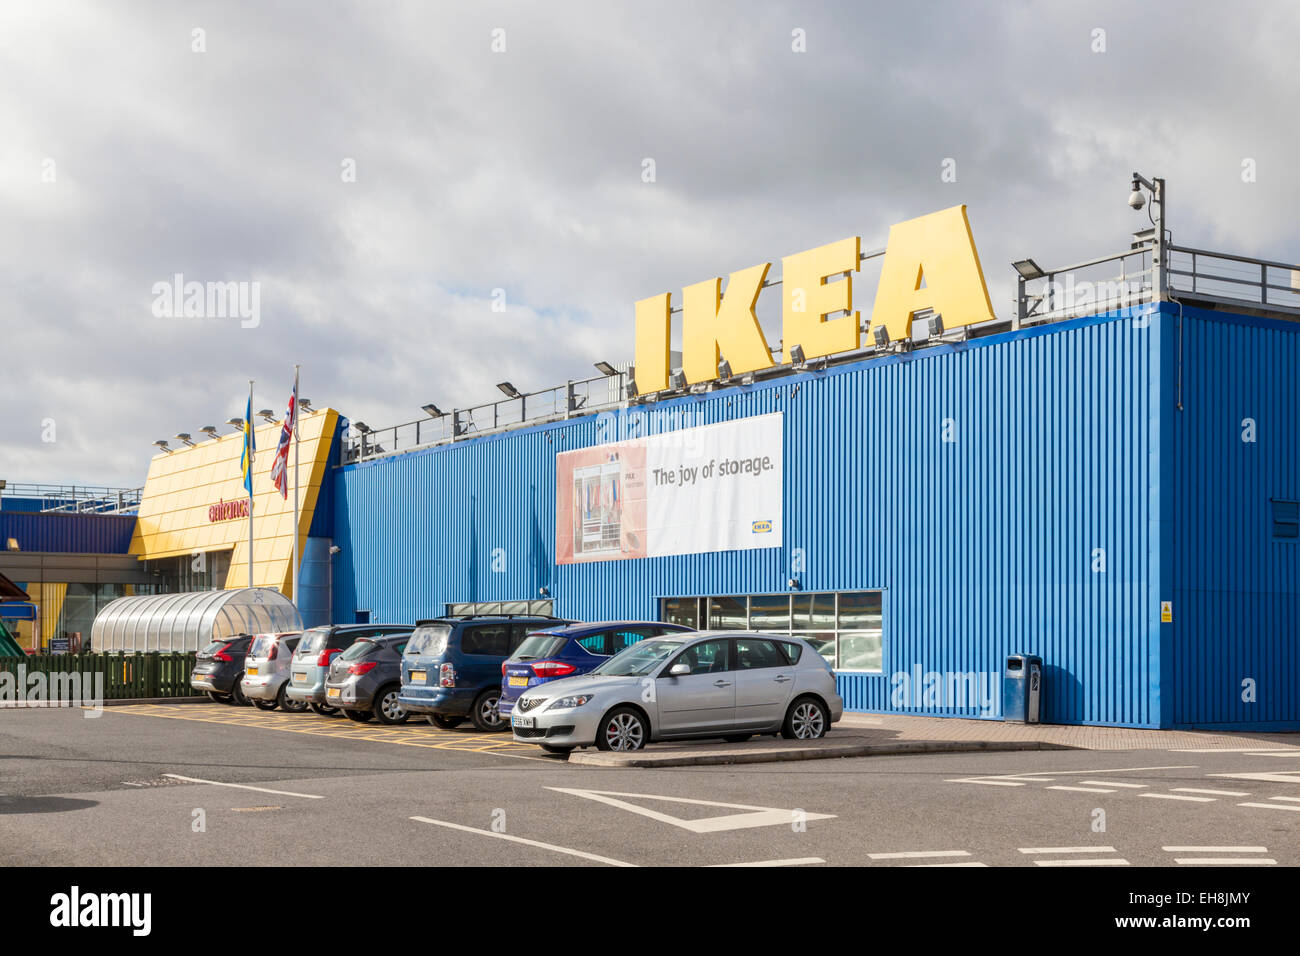 Magasin IKEA, Giltbrook Retail Park, Lancashire, England, UK Banque D'Images